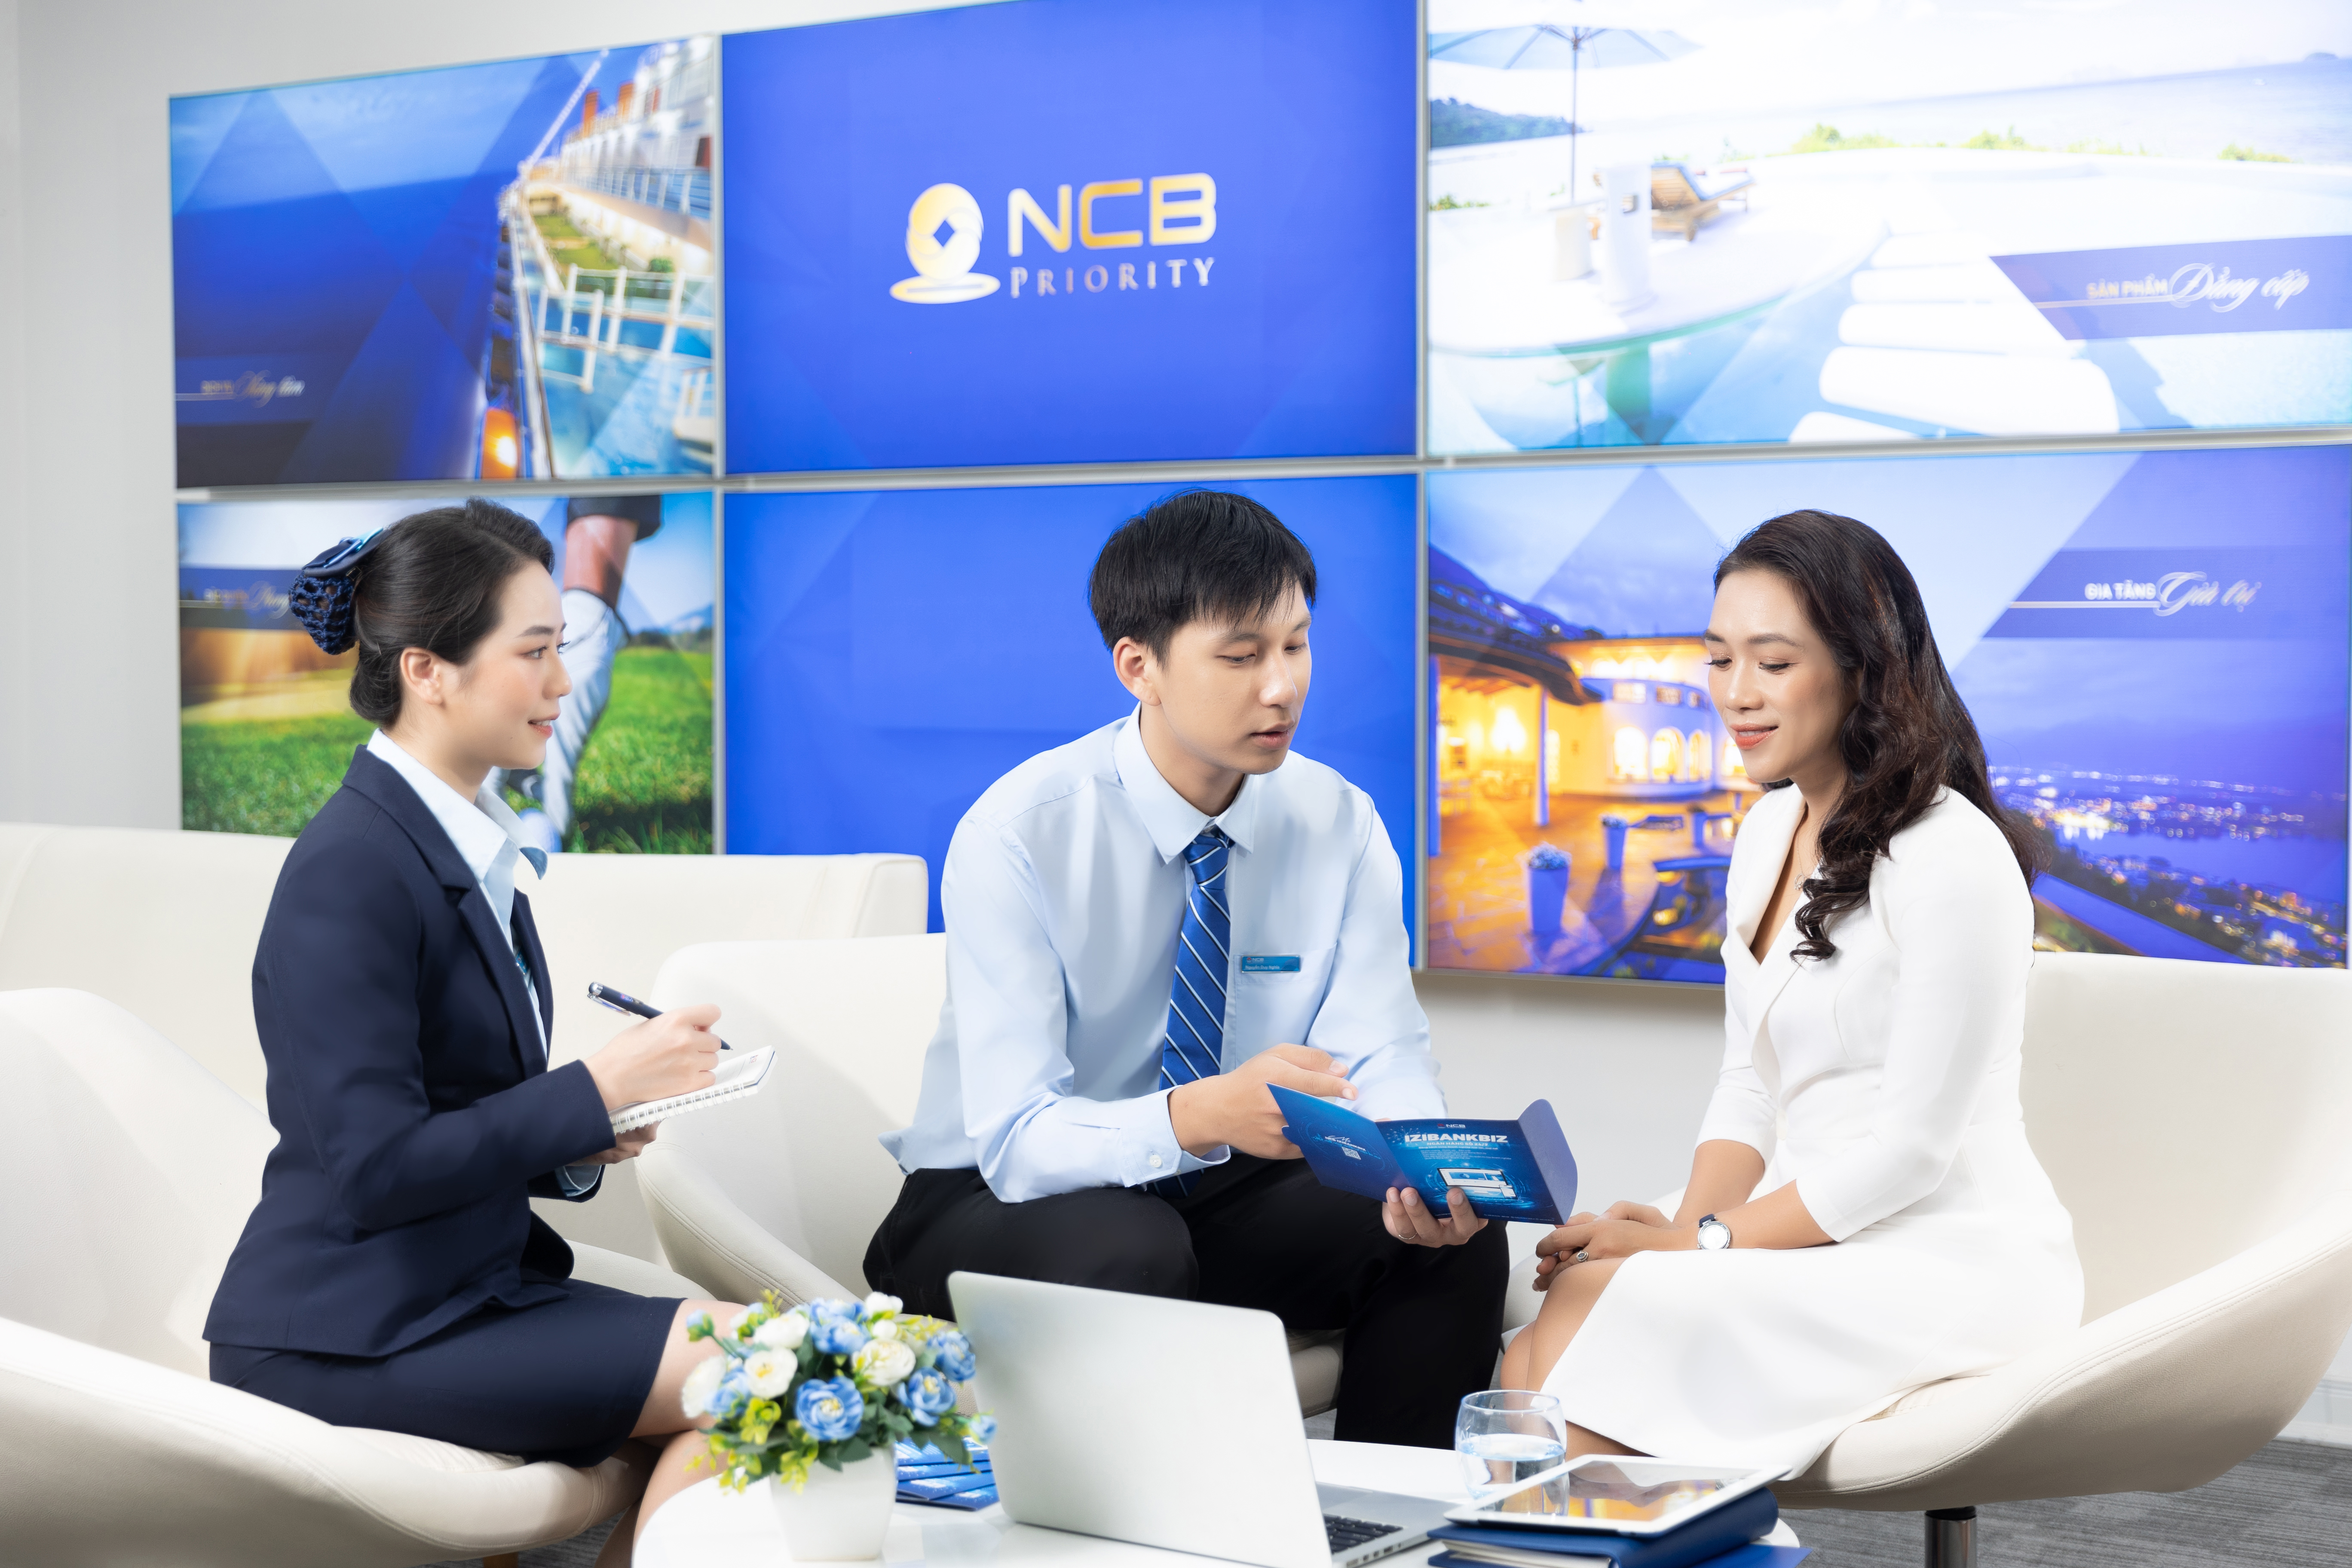 NCB đang ngày càng khẳng định vai trò đồng hành tích cực với sự hồi sinh và tăng tốc của cộng đồng doanh nghiệp Việt.